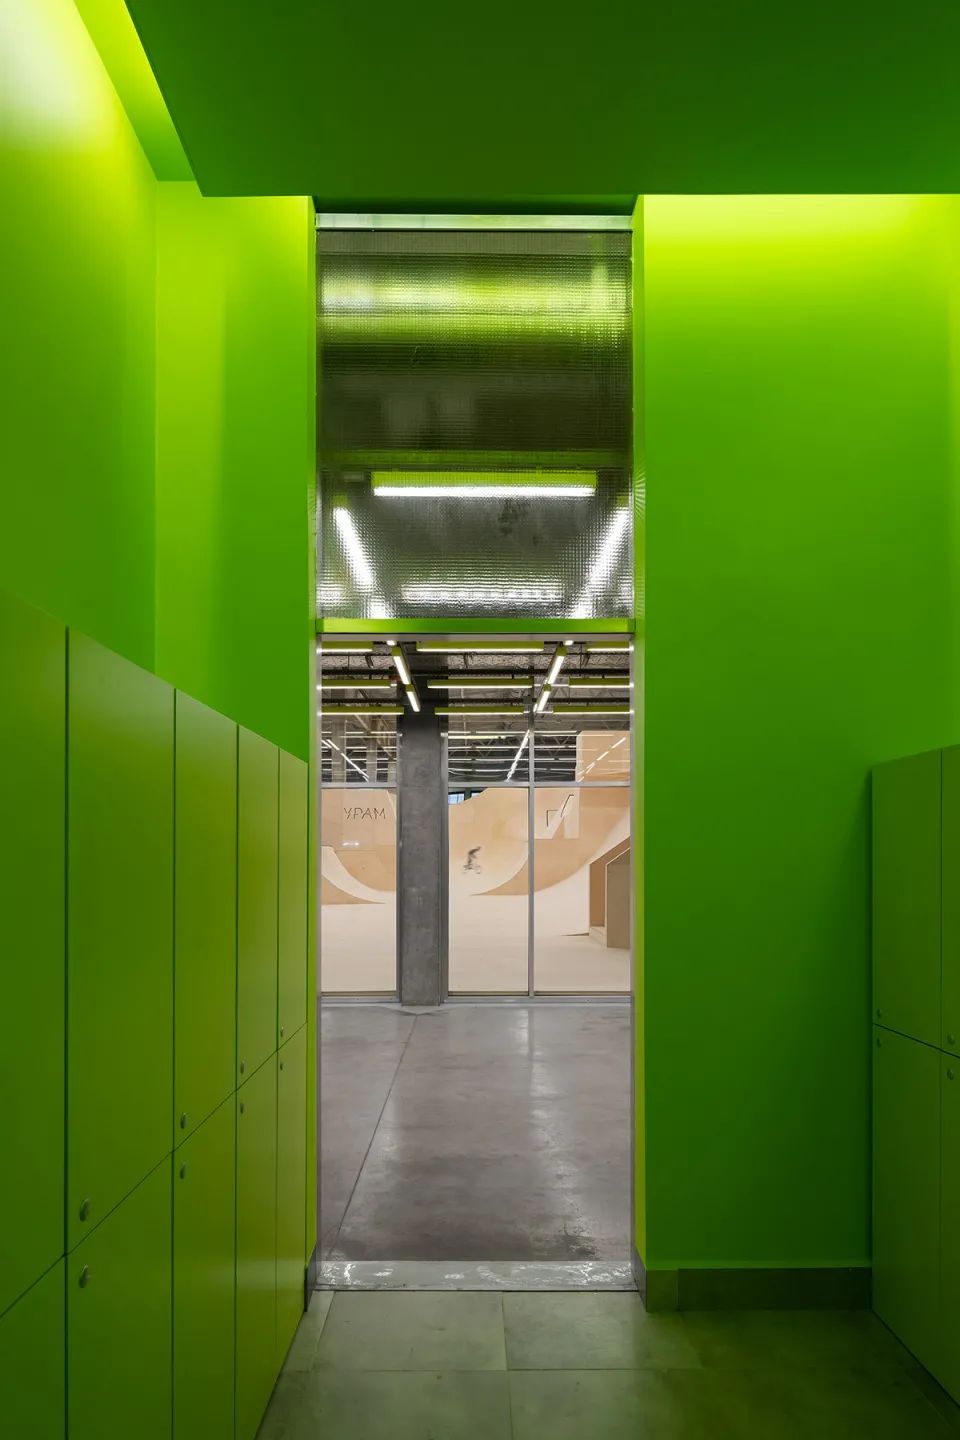 從更衣室向外望 綠色牆壁 green panel wall 俄羅斯室內極限公園 Russia URAM Indoor Extreme Park／KOSMOS Architects + Legato Sports Architecture